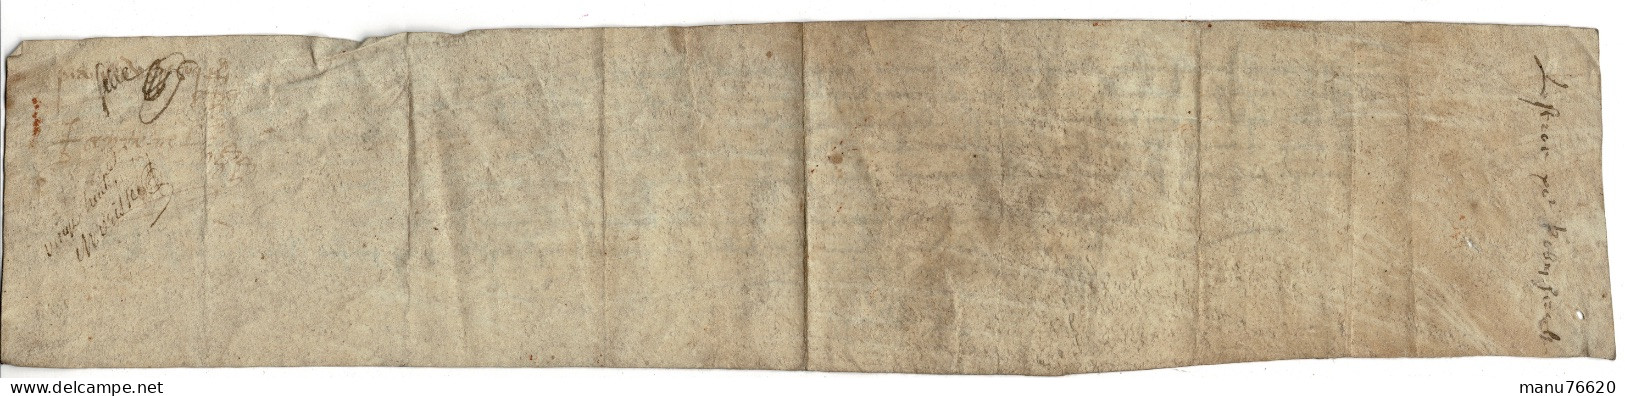 Ref 2 - RARE!, Lettre, Document Notarial , Le Havre Et Environs , écritures Très Anciennes , Papier épais. - Manuscritos